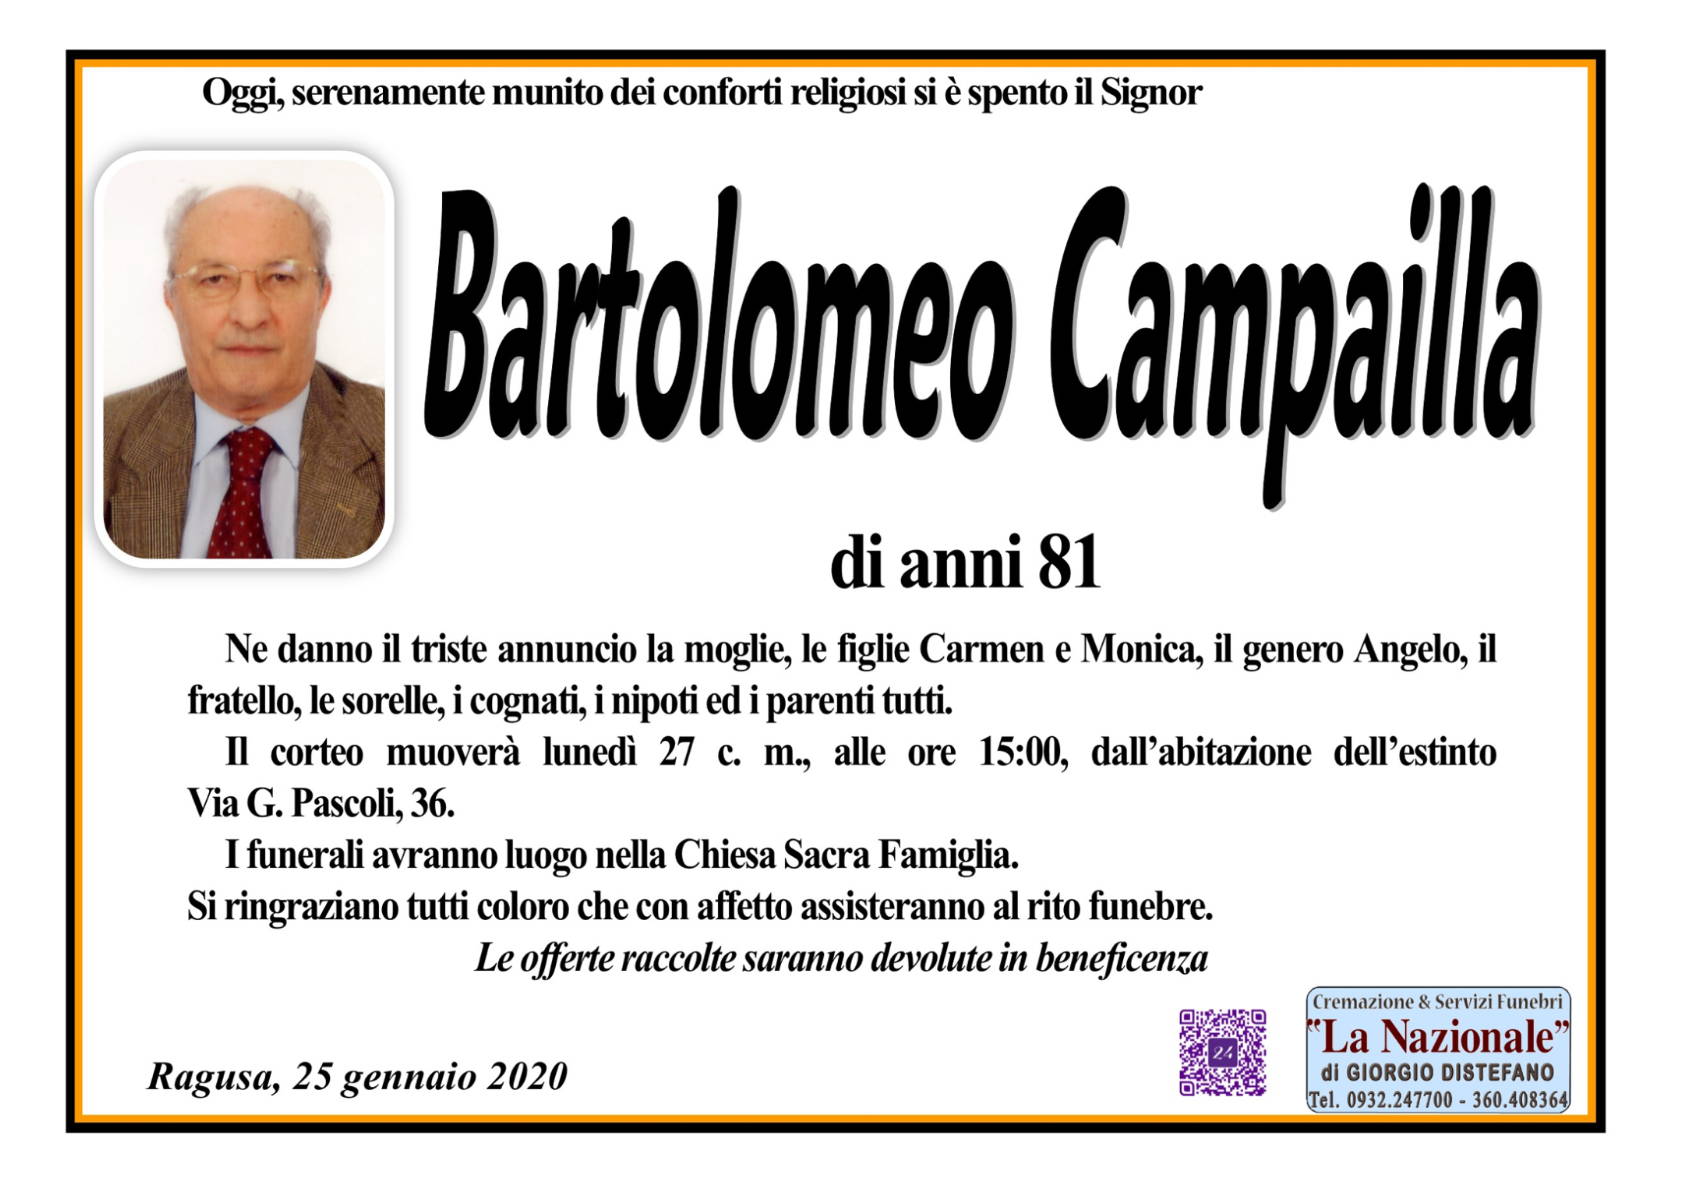 Bartolomeo Campailla